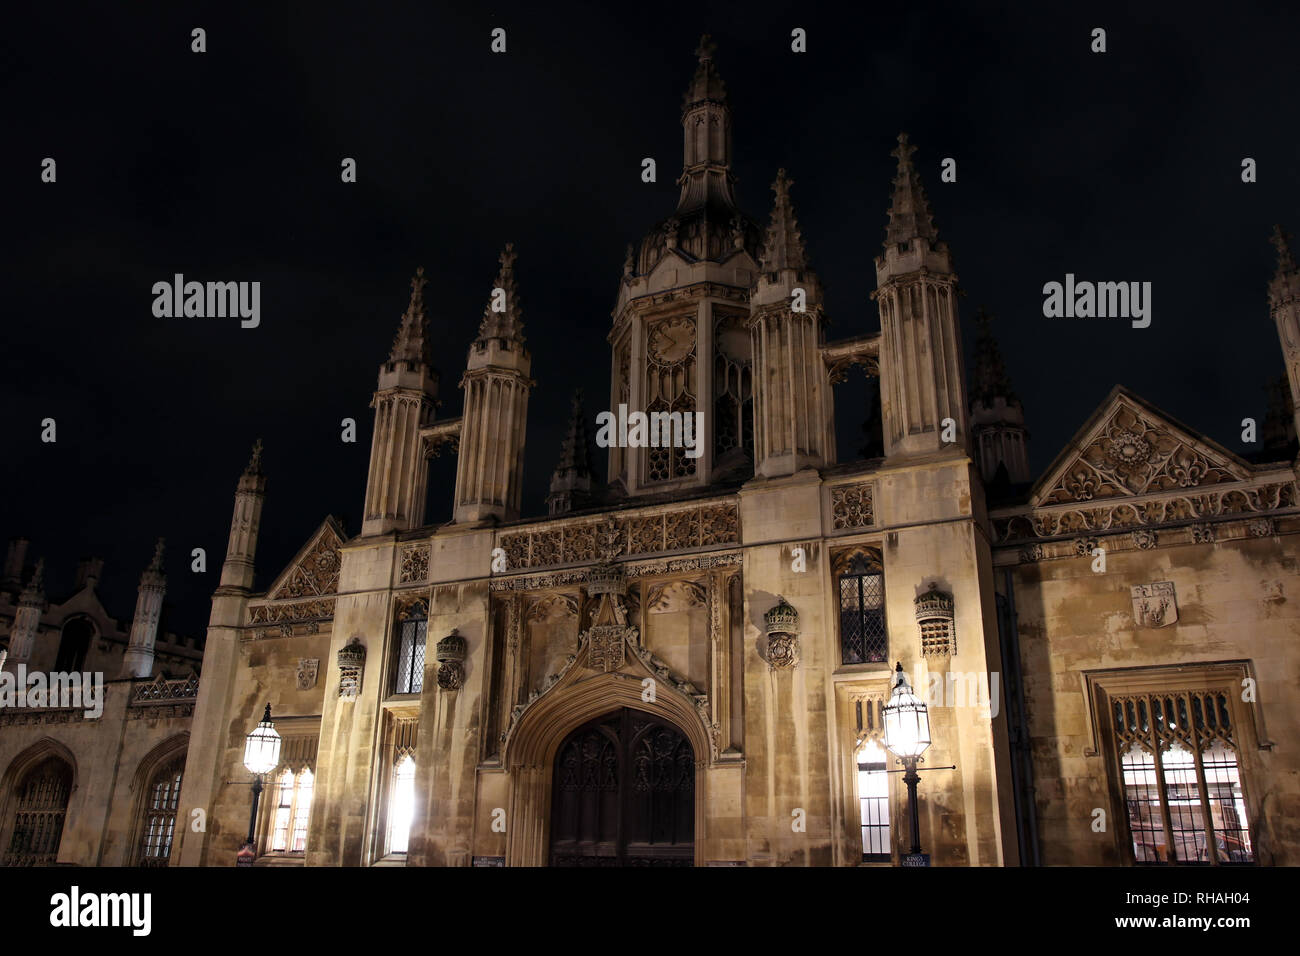 Nuit dans la région de Cambridge, Angleterre Banque D'Images